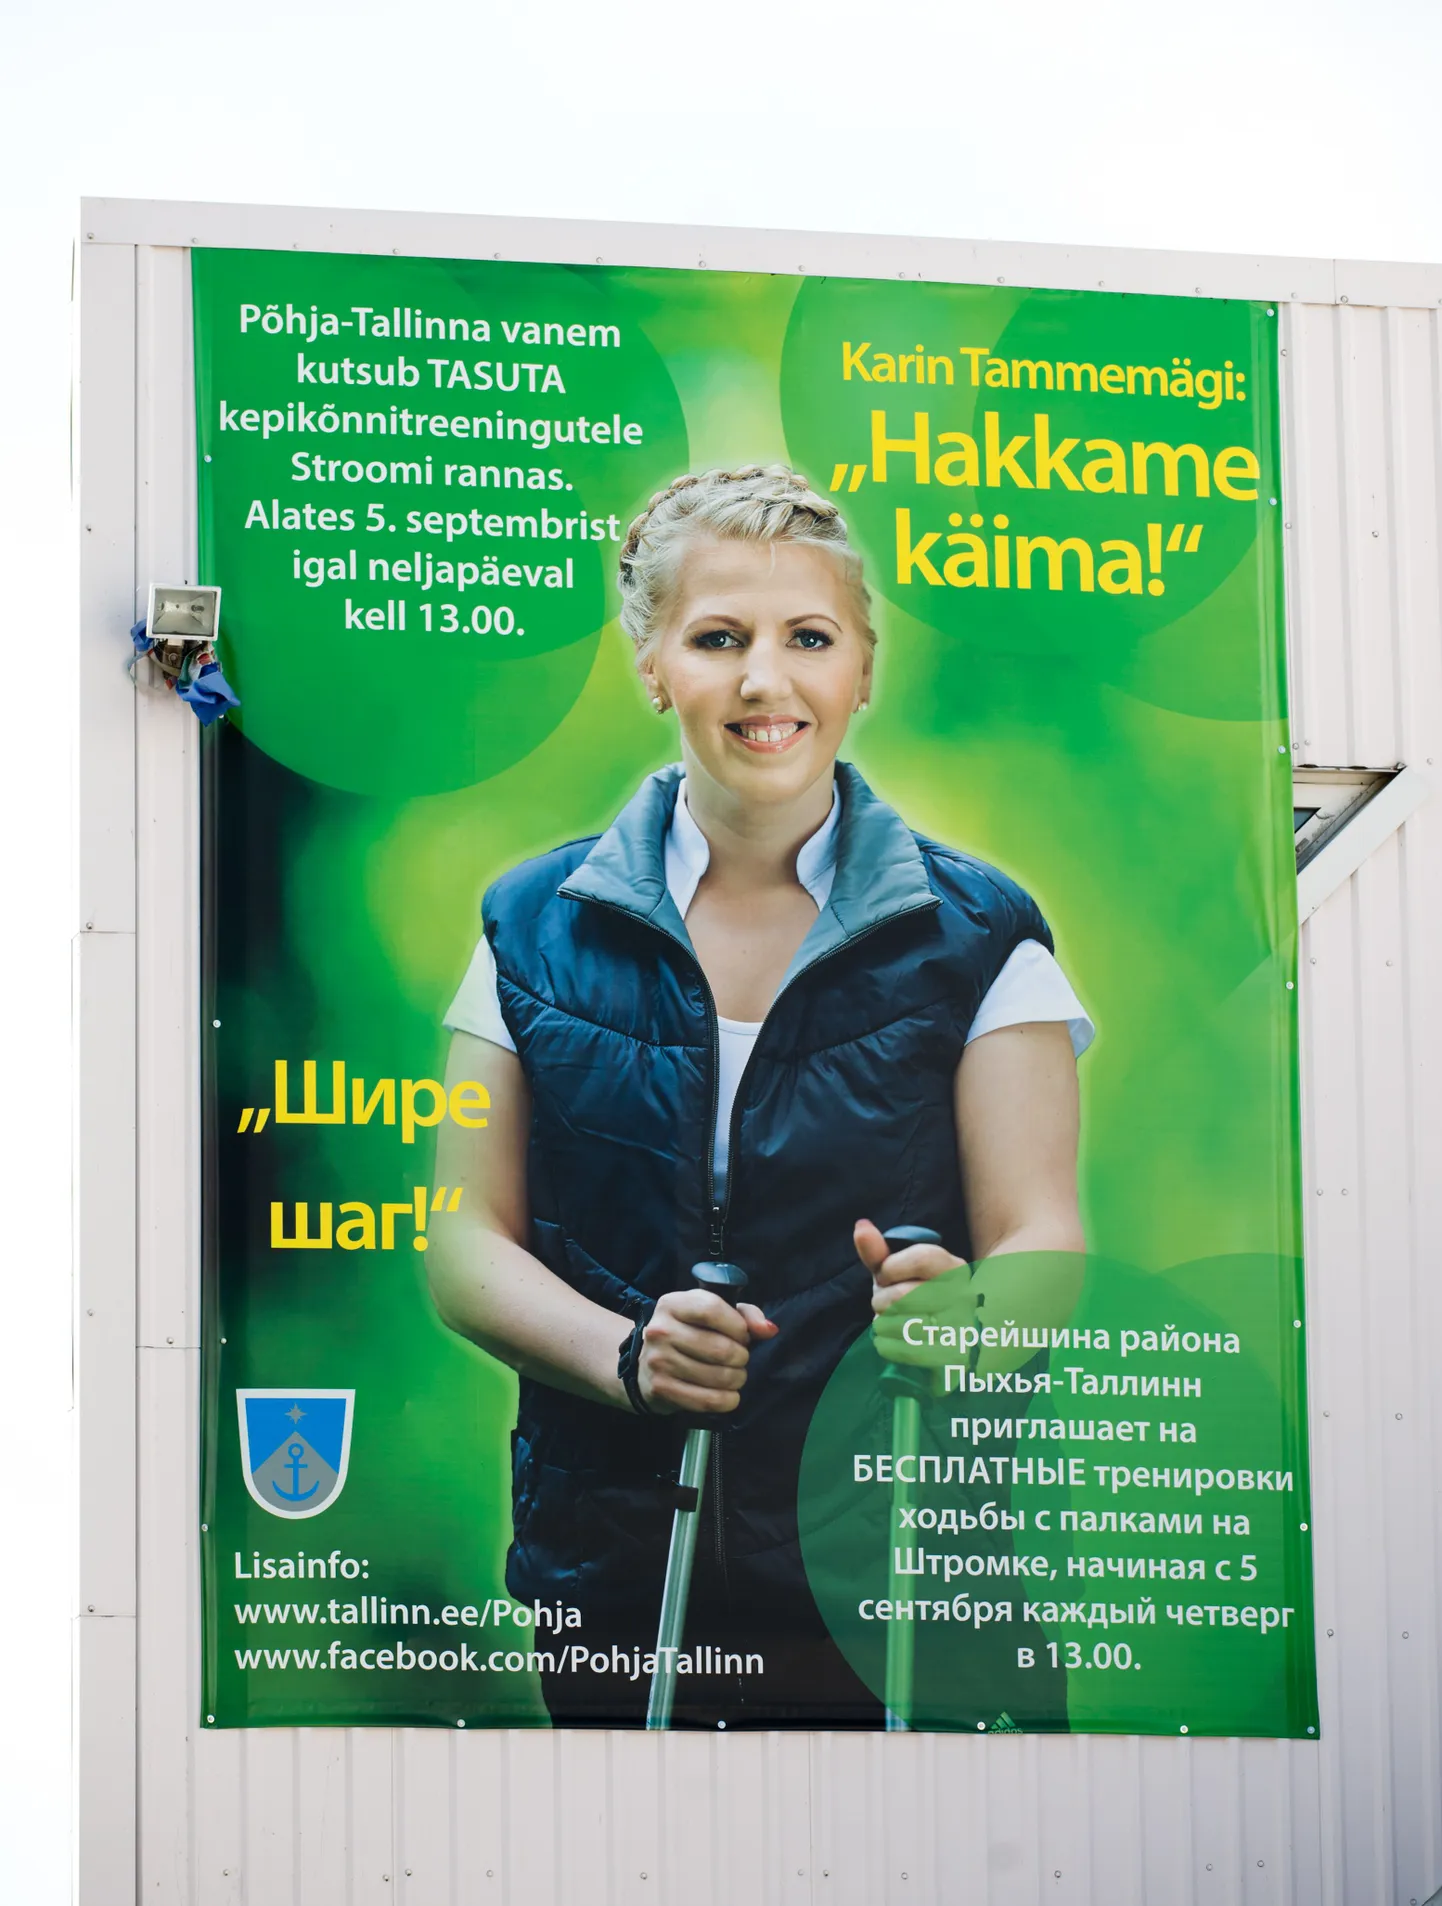 Karin Tammemägi kepikõnnikampaania reklaam Stroomi rannahoonel.